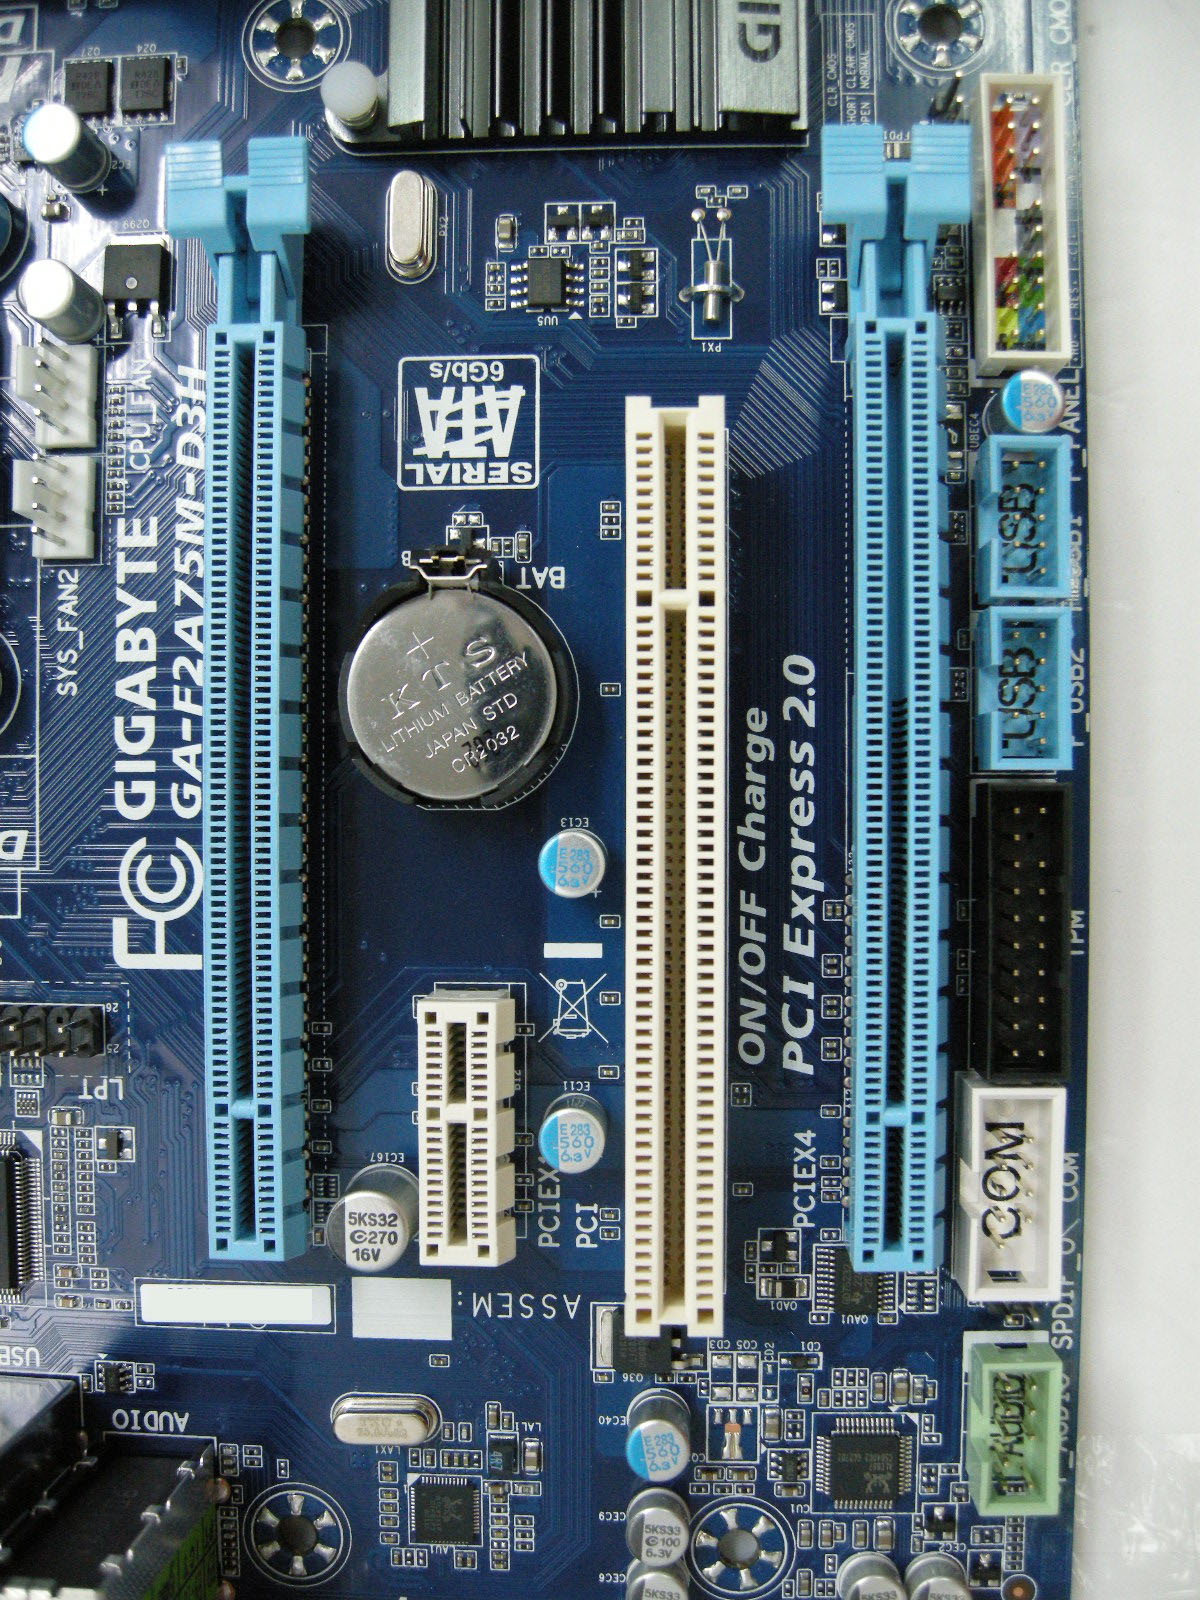 DSCN5292.JPG - 532.18 KB